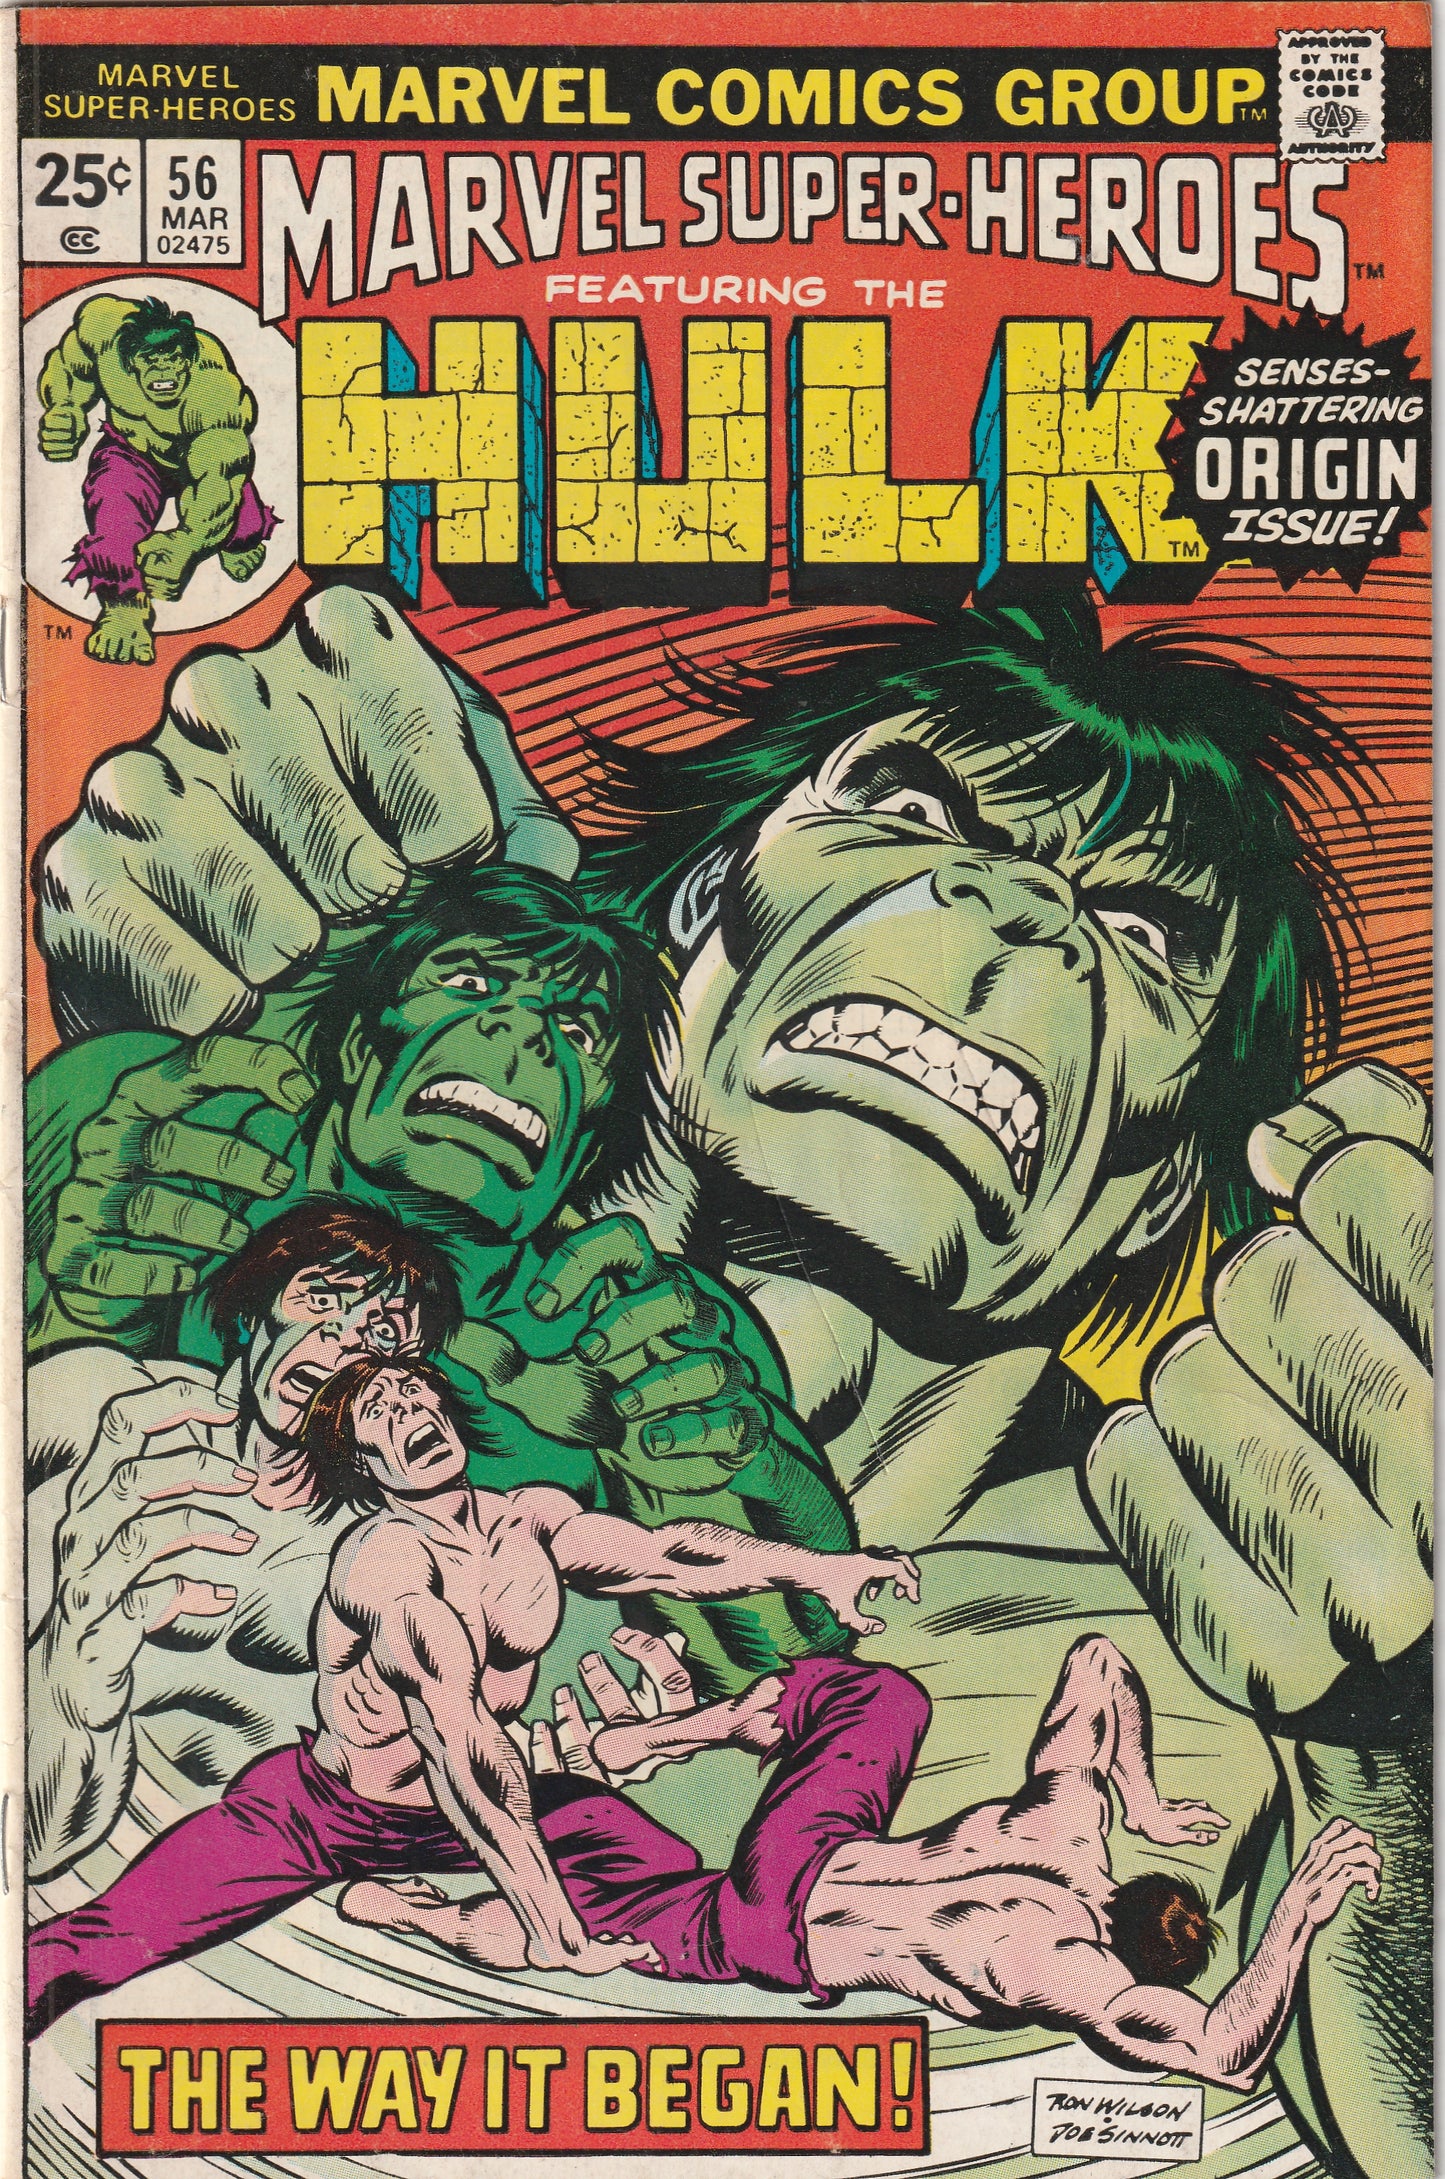 Marvel Super-Heroes #56 (1976) - Reprints Incredible Hulk 102